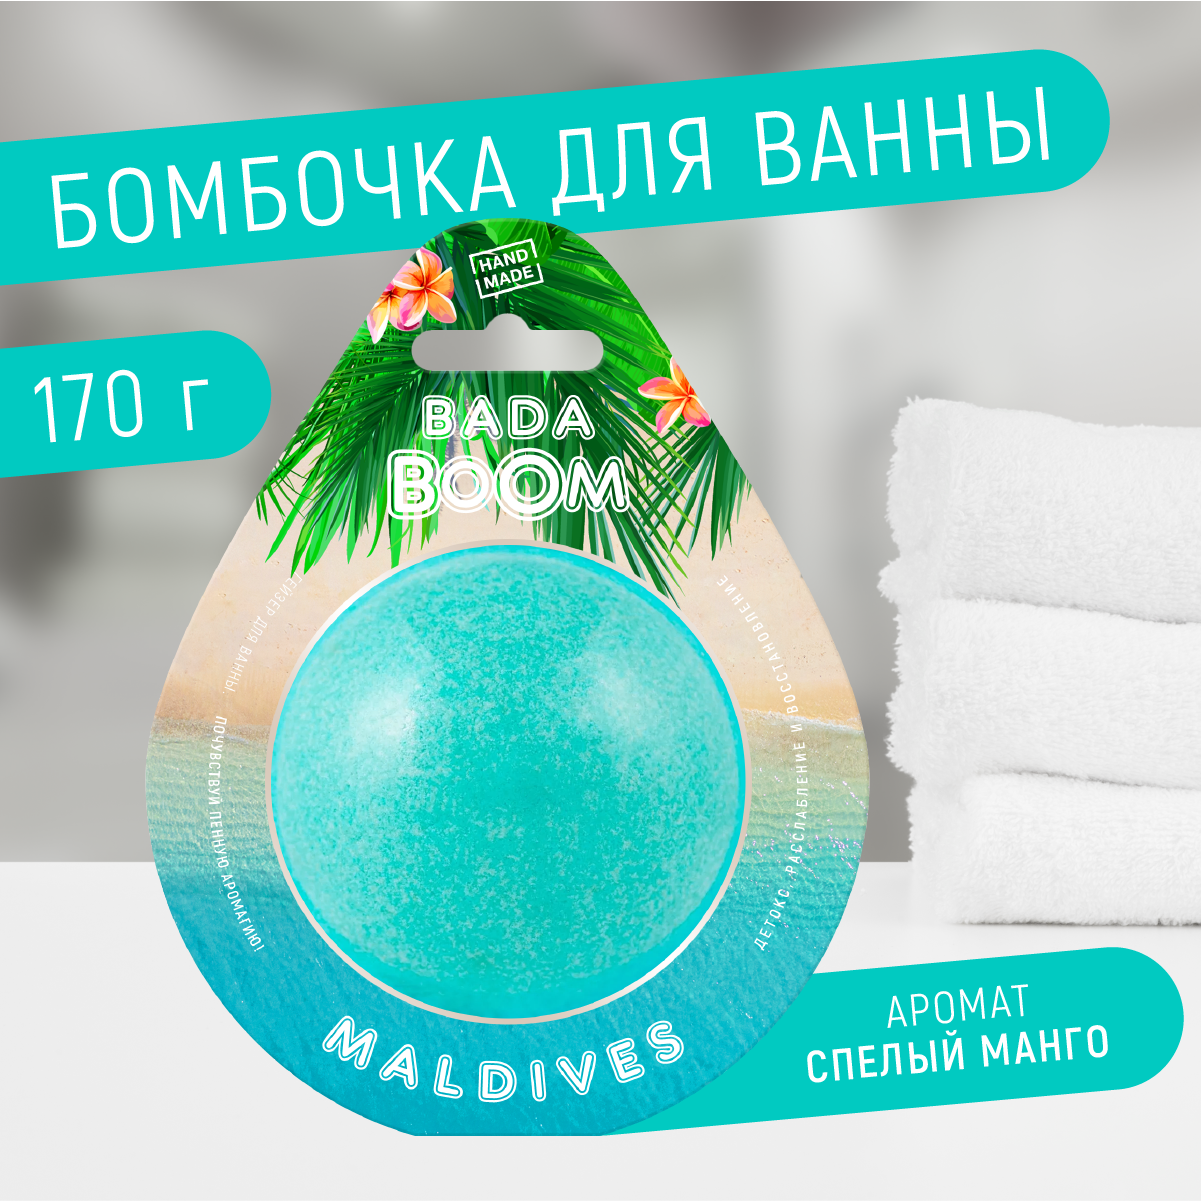 Бомбочка для ванны BADA BOOM Maldives манго 170 г гель для душа чистое счастье верь в мечту 100 мл аромат зимняя ваниль